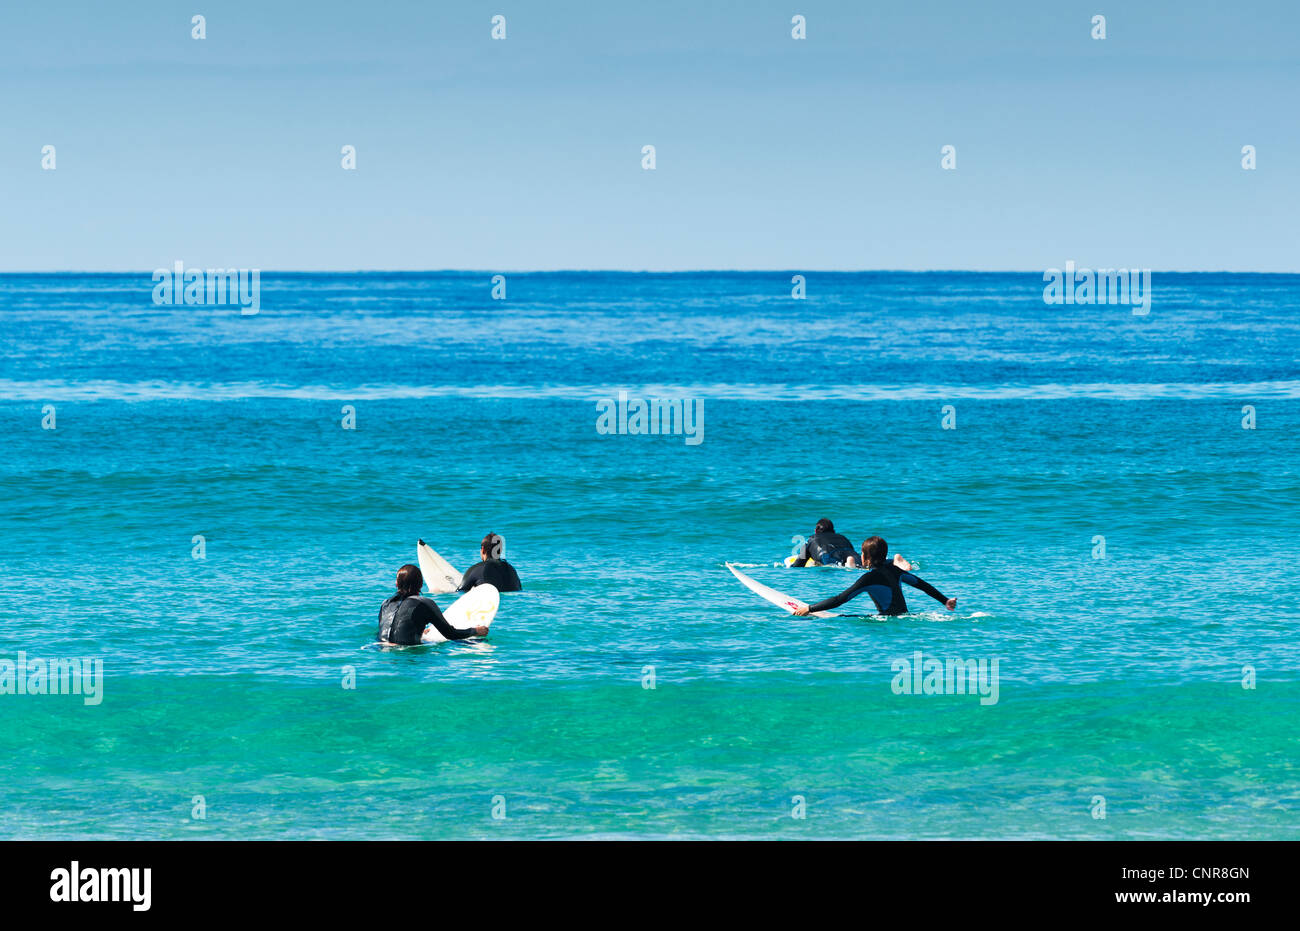 Surfers, Tarifa, Costa de la Luz, Cadiz, Andalusia, Spain. Stock Photo